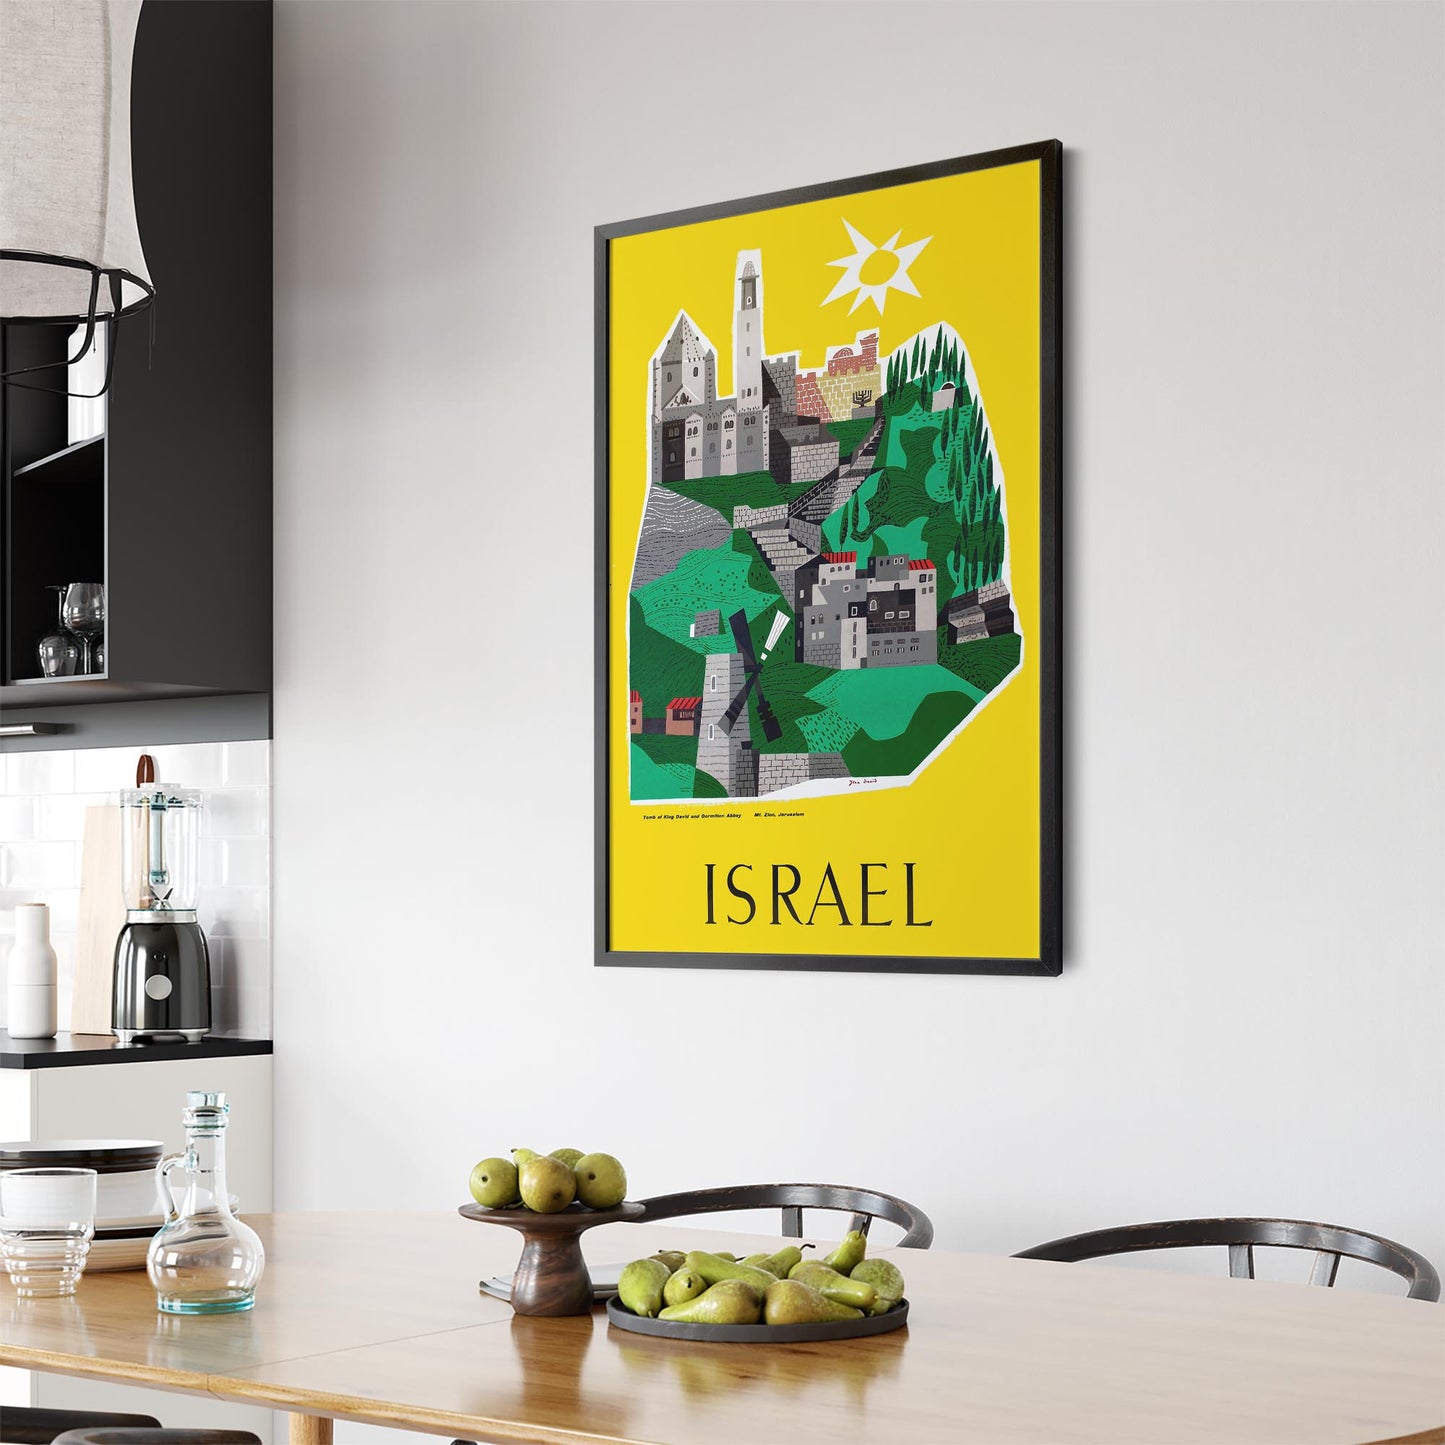 Israel by Jean David | Framed Vintage Travel Poster